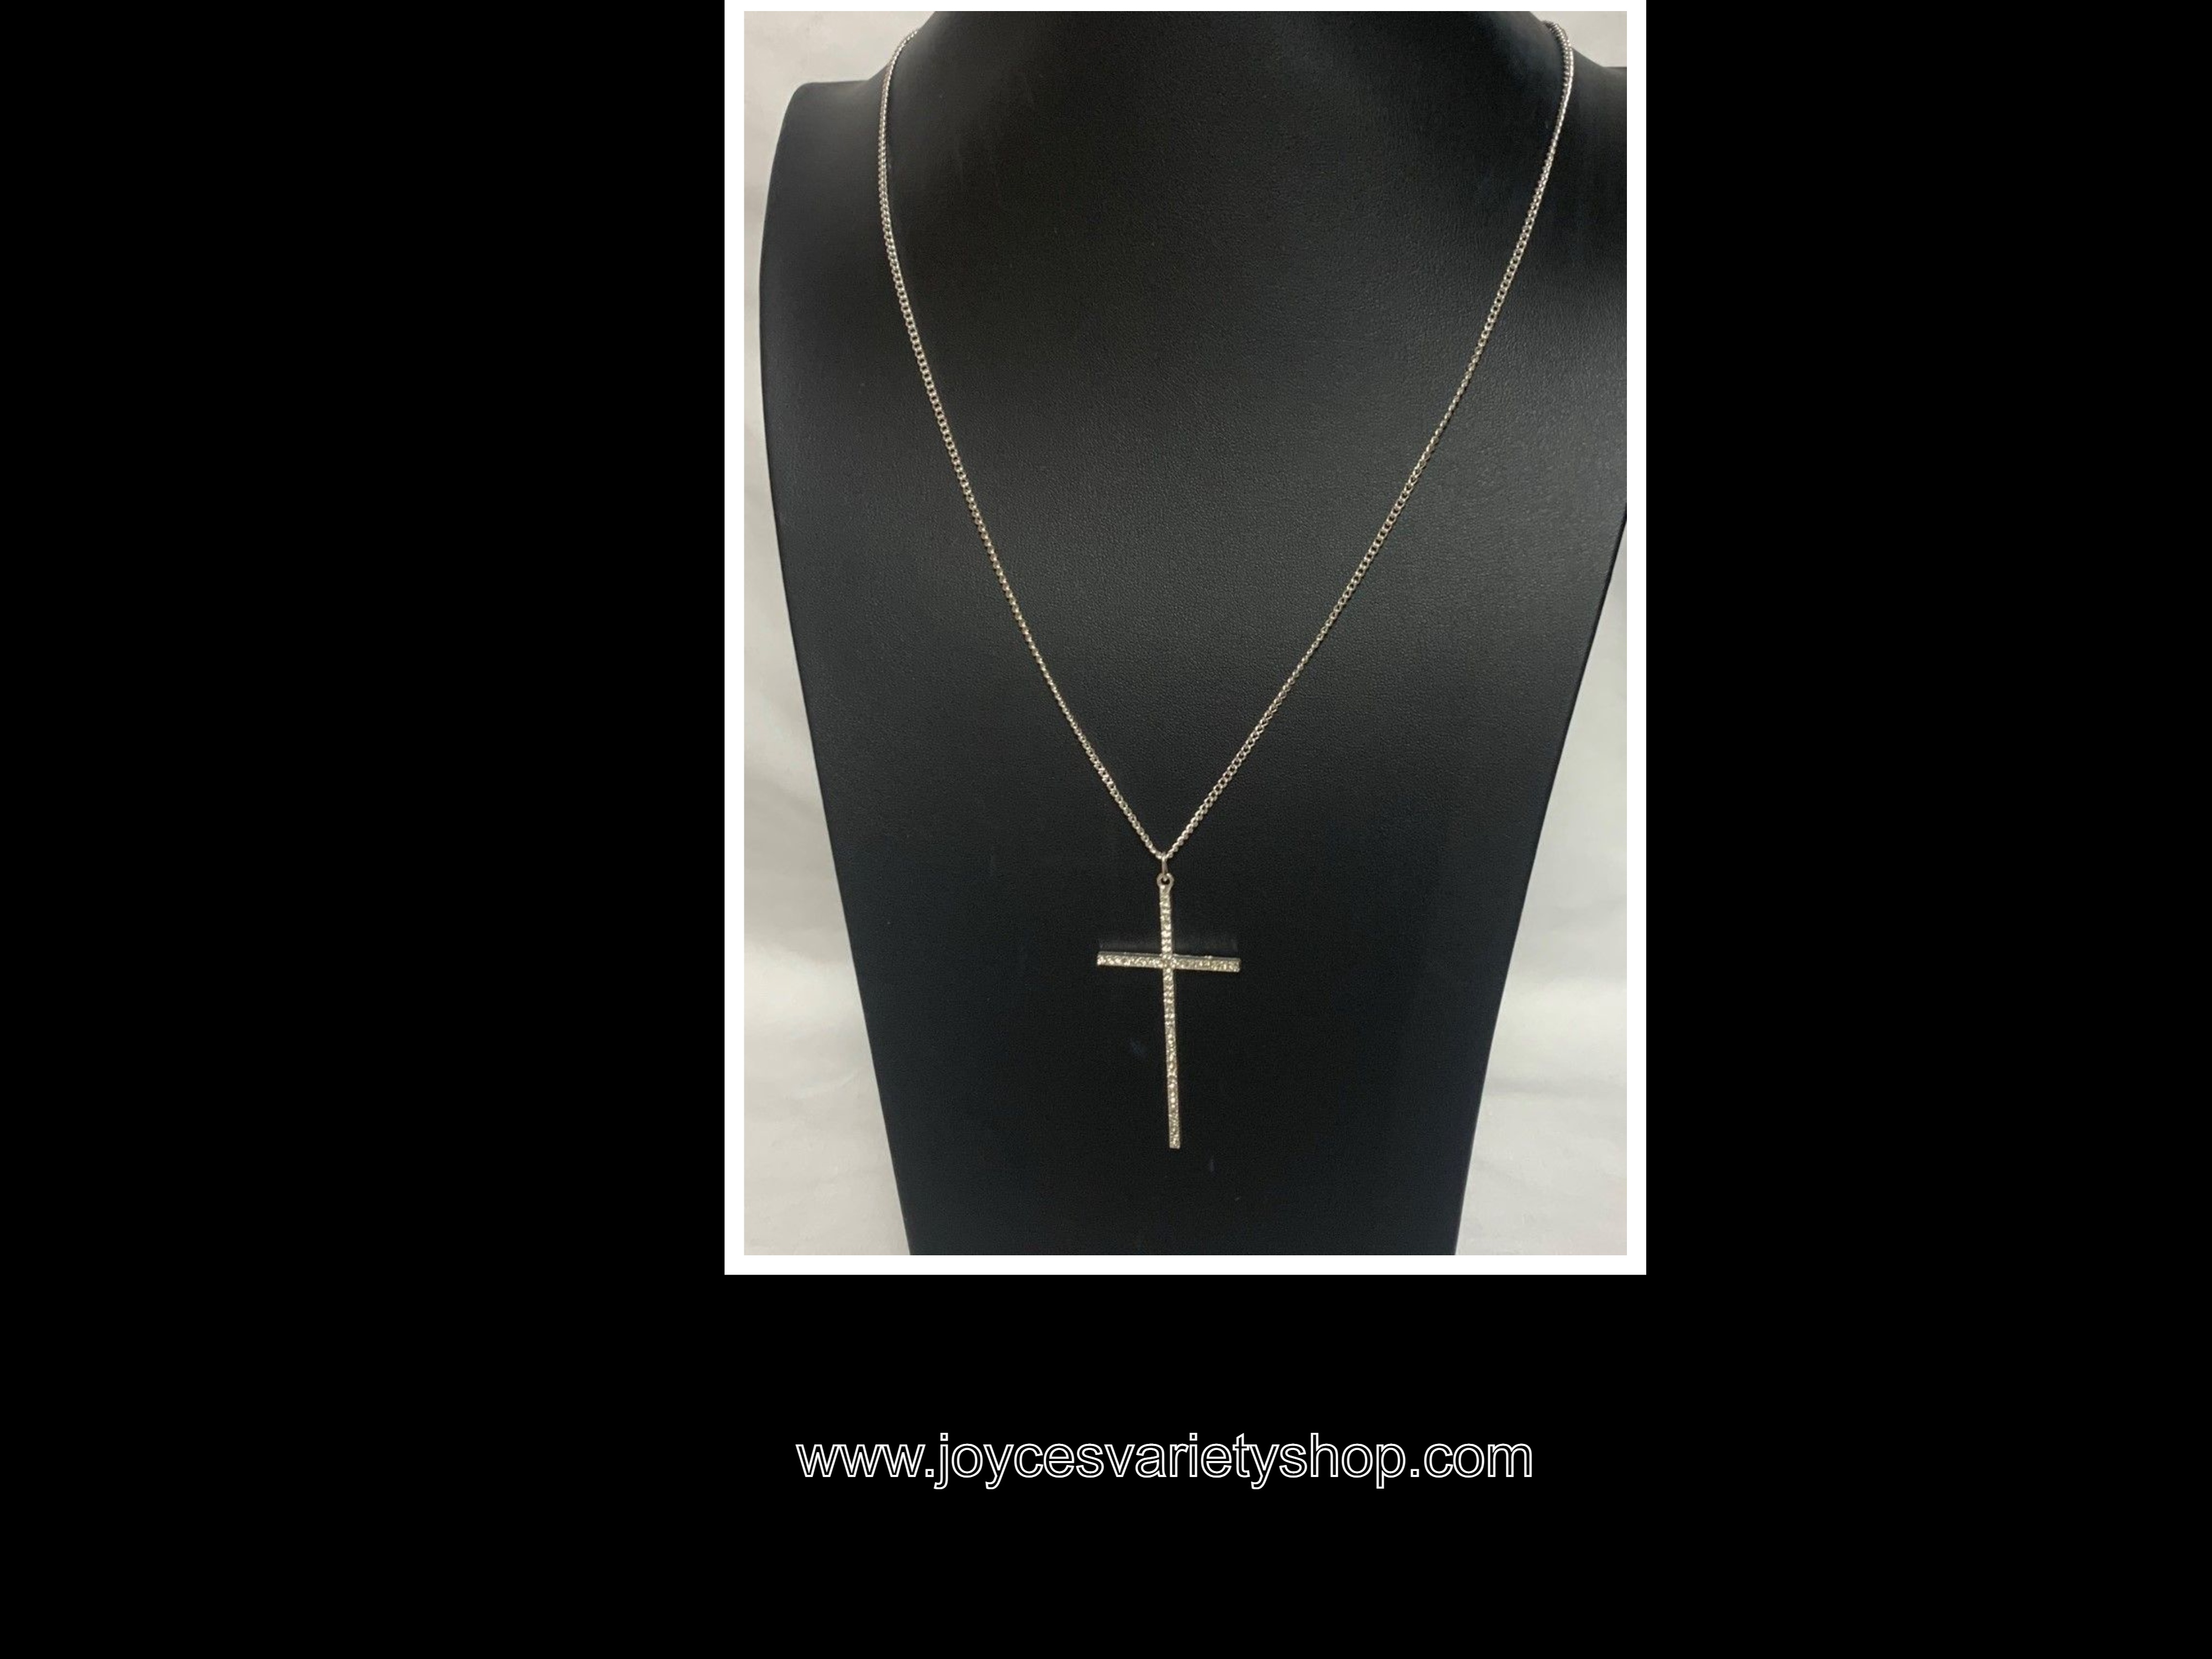 Rhinestone Cross Necklace 3" Pendant 17" Silver Chain